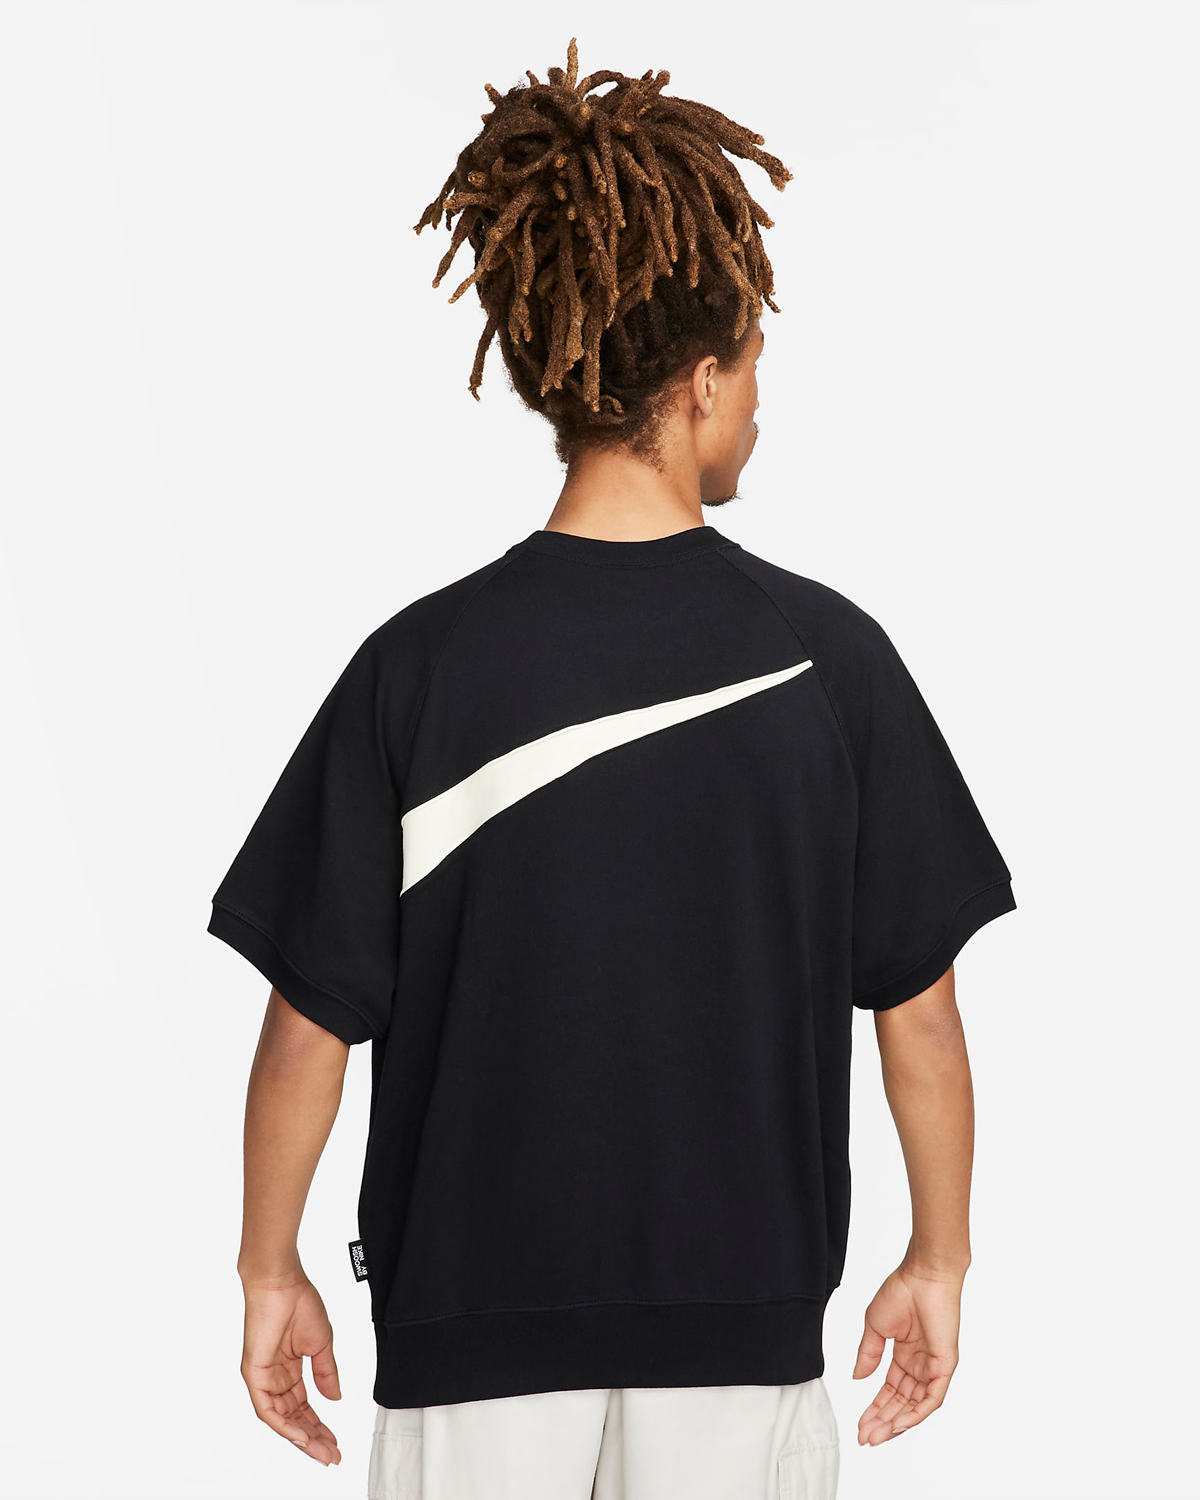 Nike-Sportswear-Swoosh-Short-Sleeve-Top-Black-Coconut-Milk-2